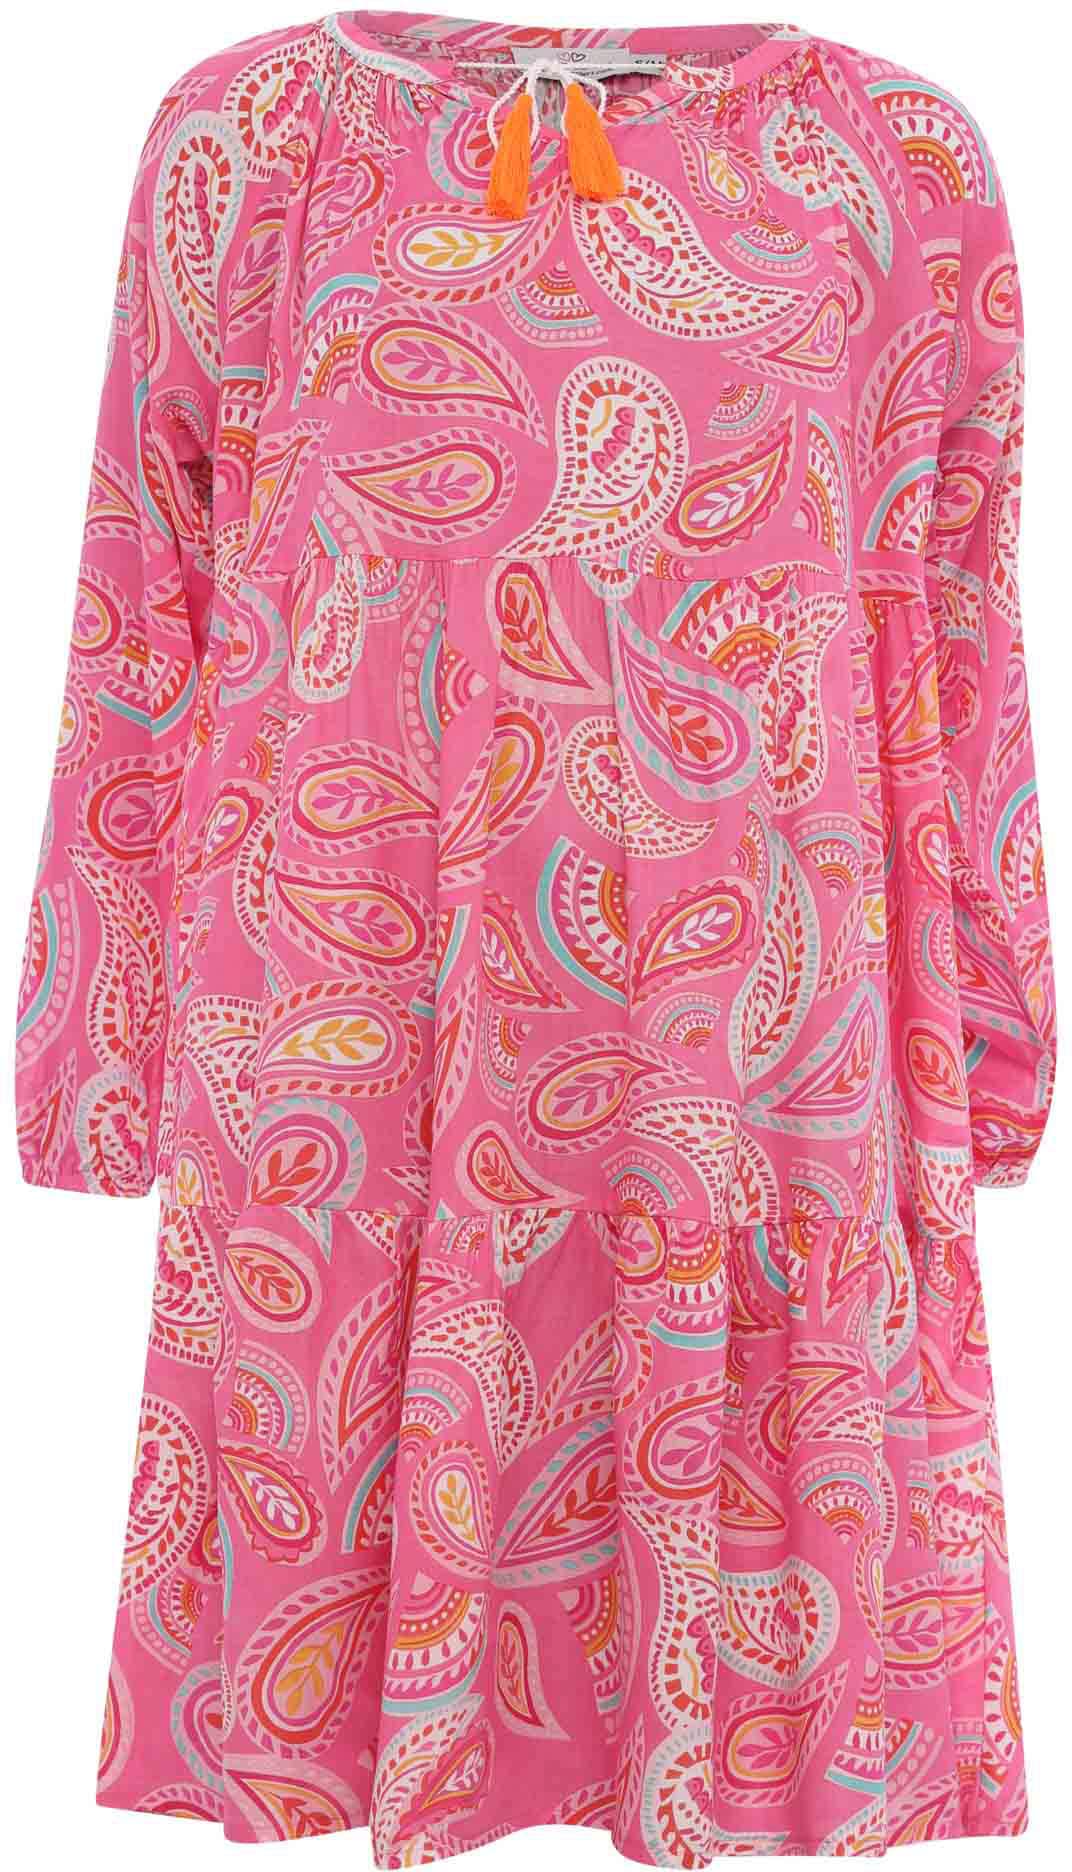 Pinkes Kleid Kleider online bei kaufen OTTO Pinkfarbene jetzt 